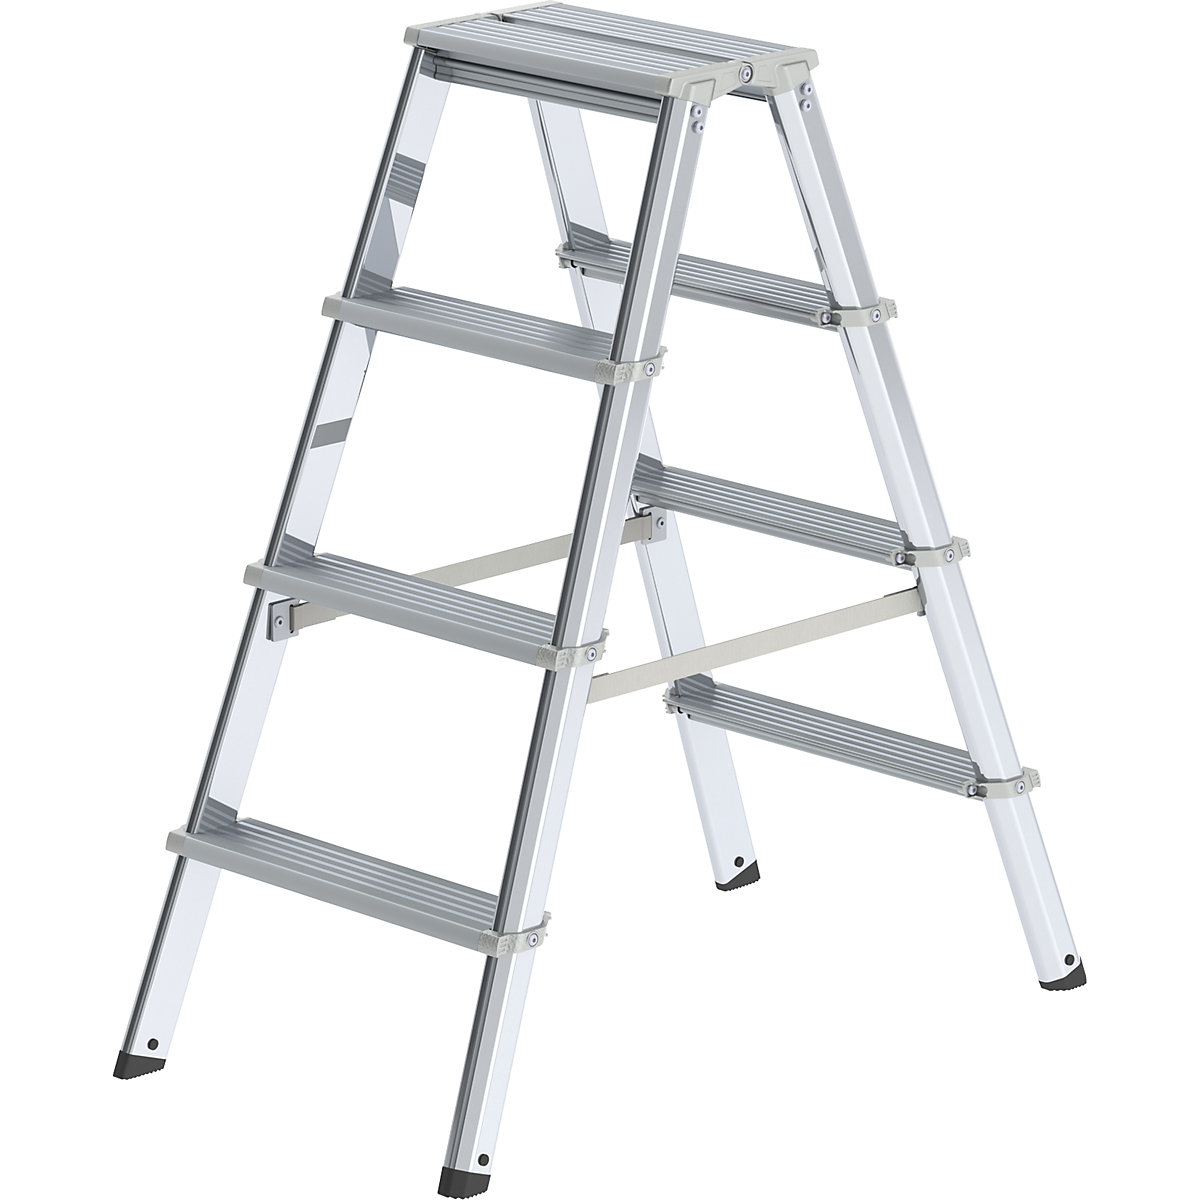 Hliníkový stojaci rebrík so stupňami, pochôdzny z dvoch strán – MUNK, s ergonomicky tvarovanou stojinou, 2 x 4 stupne, pracovná výška 2500 mm-3